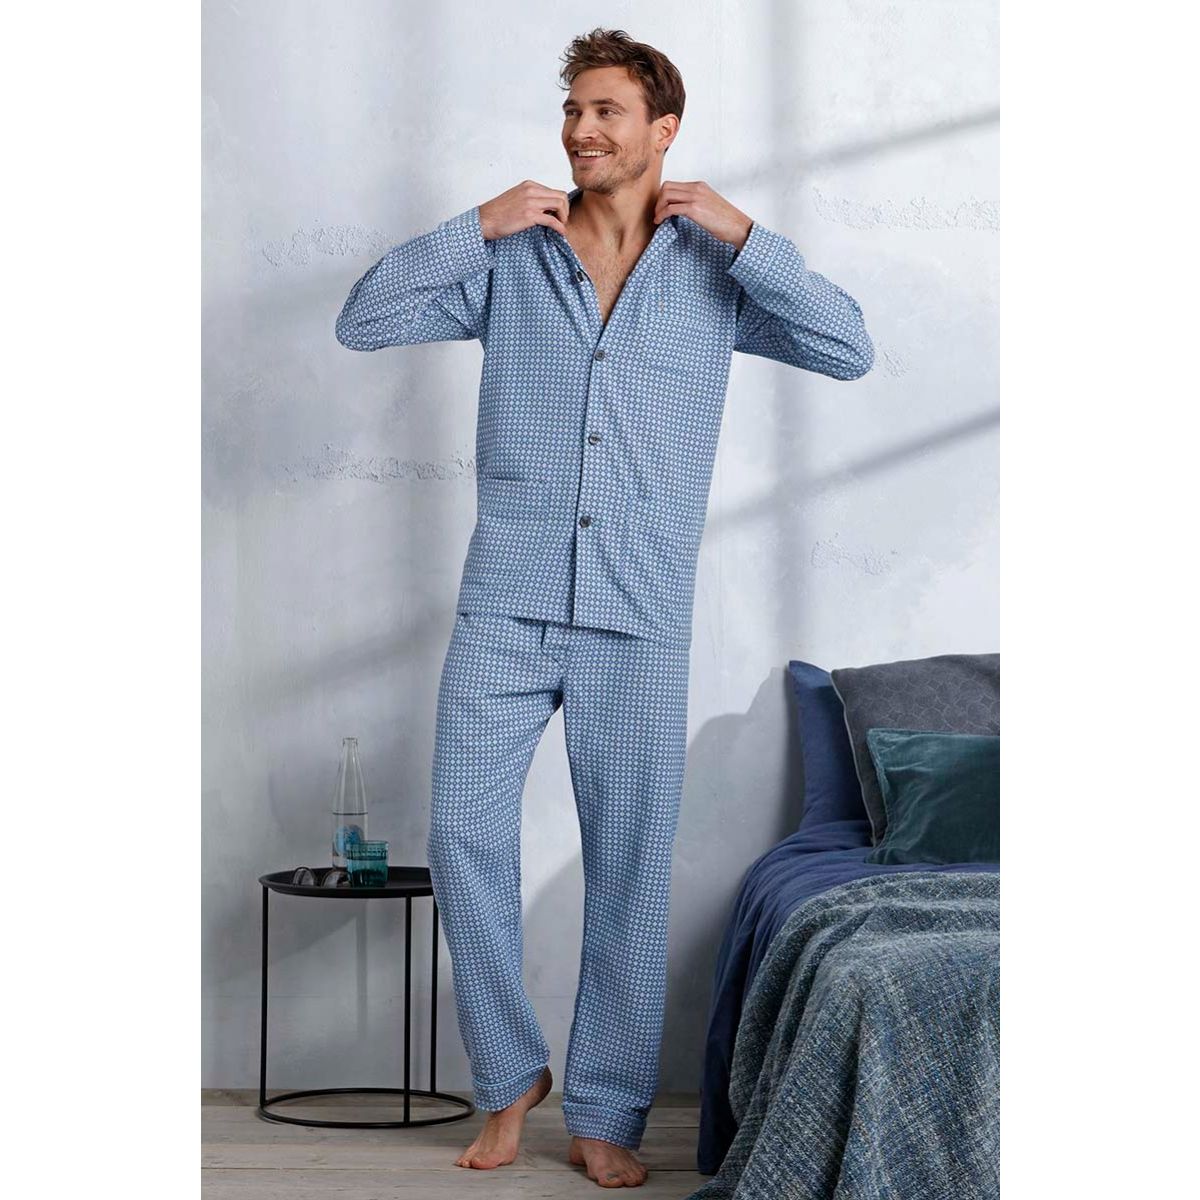 molen Onderdrukker Trunk bibliotheek Flanellen doorknoop heren pyjama blauw | Gratis verzending en retour |  Online de mooiste pyjama's, nachthemden, ondermode en meer